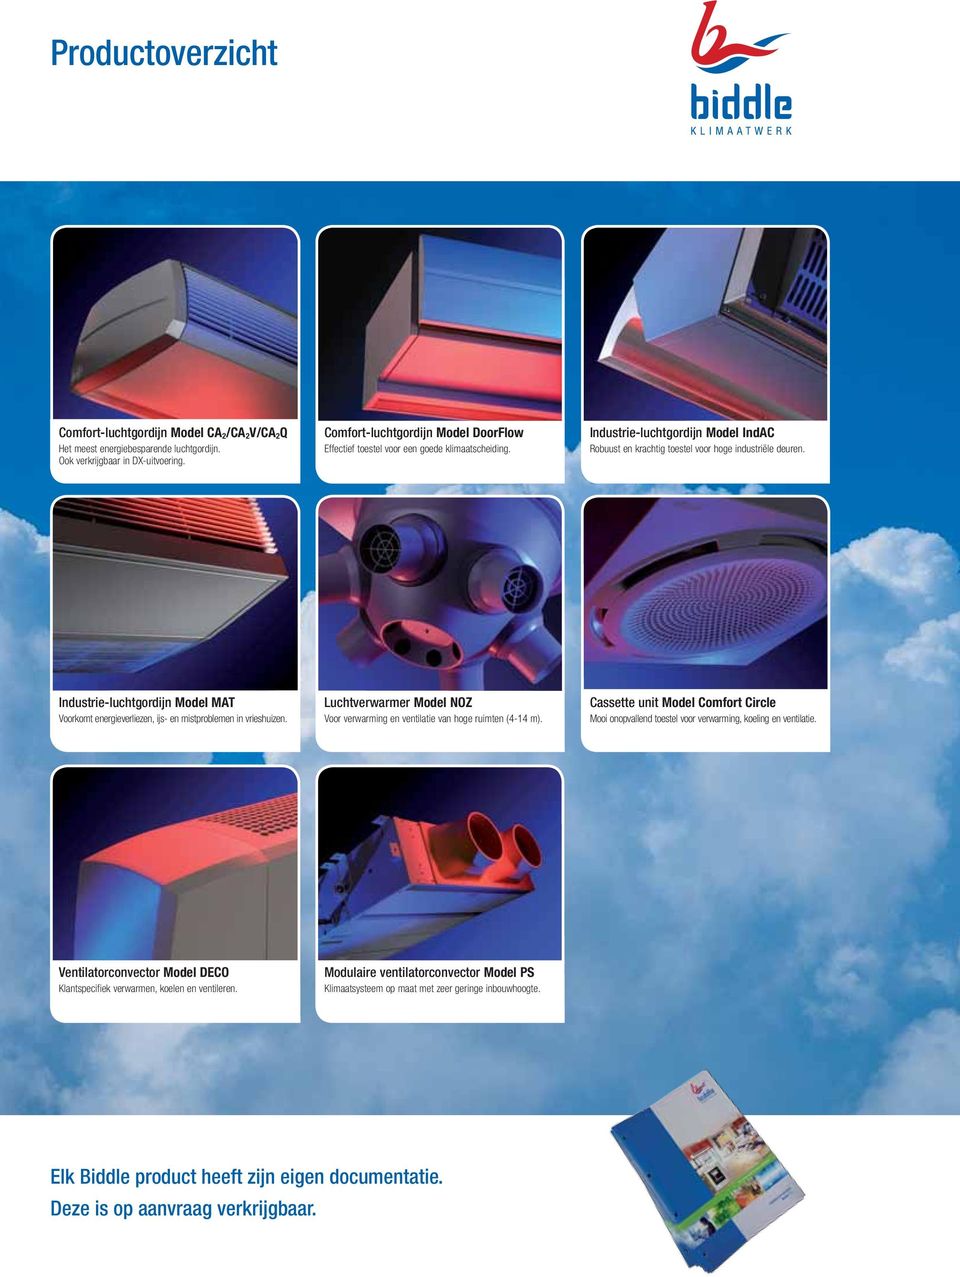 Industrie-luchtgordijn Model MAT Voorkomt energieverliezen, ijs- en mistproblemen in vrieshuizen. Luchtverwarmer Model NOZ Voor verwarming en ventilatie van hoge ruimten (4-14 m).